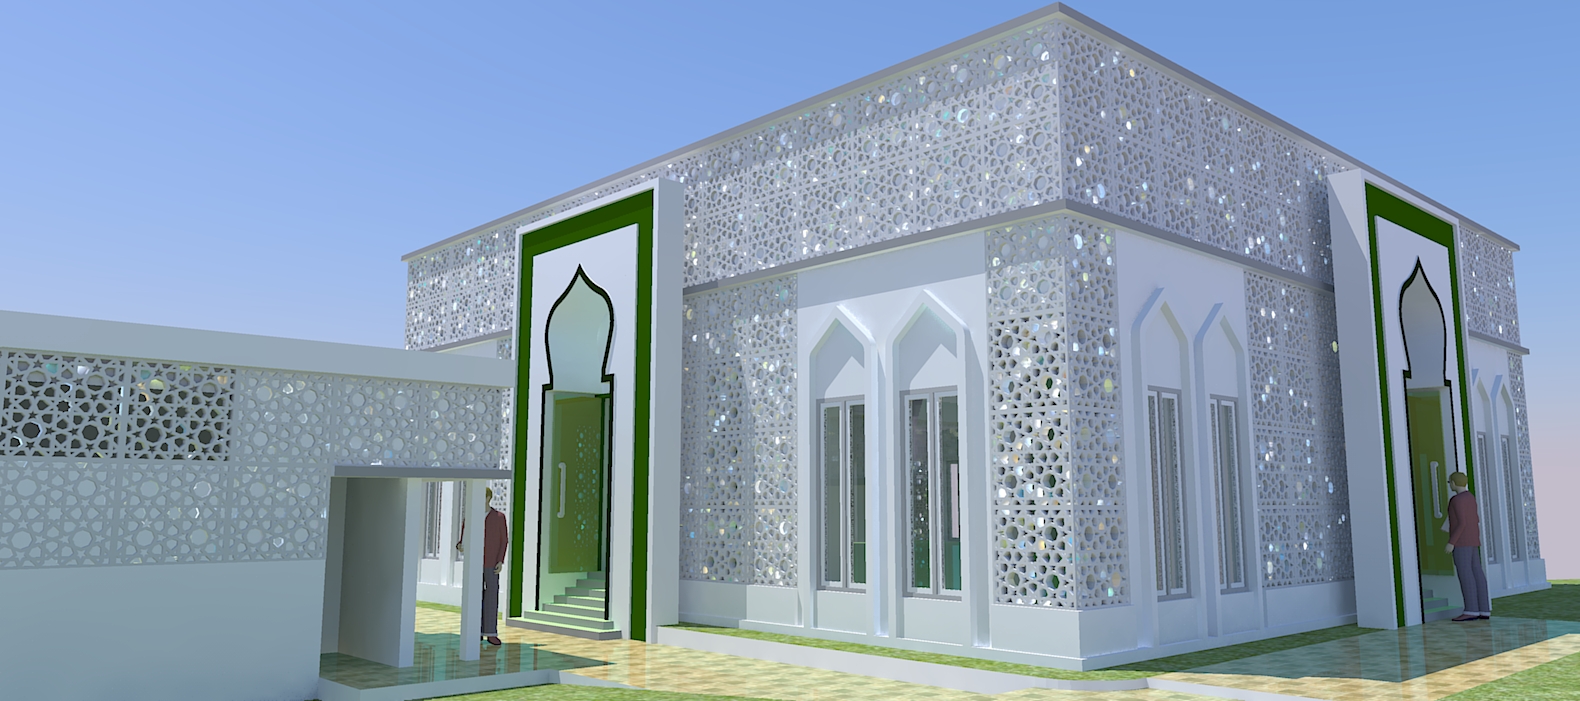 Gambar Masjid  Jasa Pembuatan Site Plan